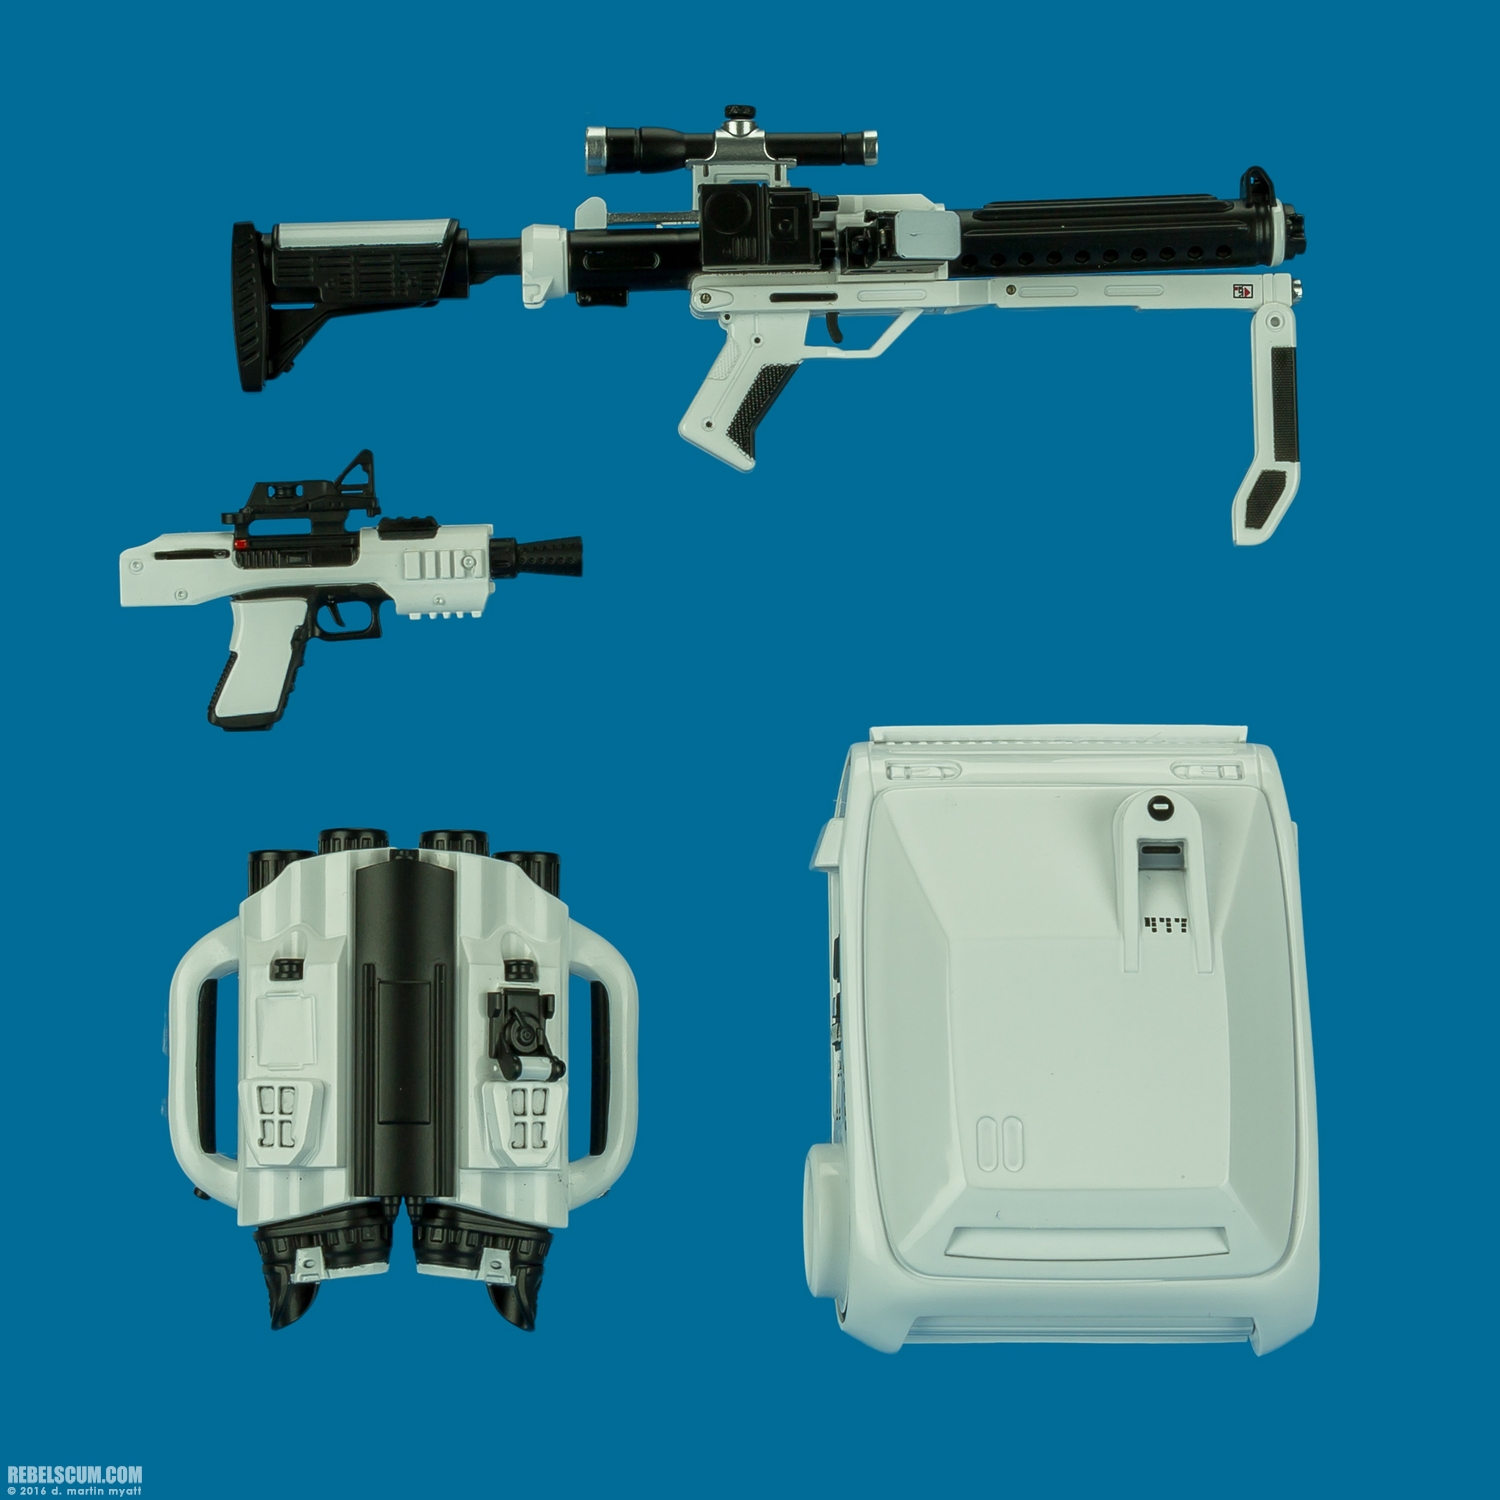 MMS333-First-Order-Stormtrooper-Jakku-Hot-Toys-011.jpg